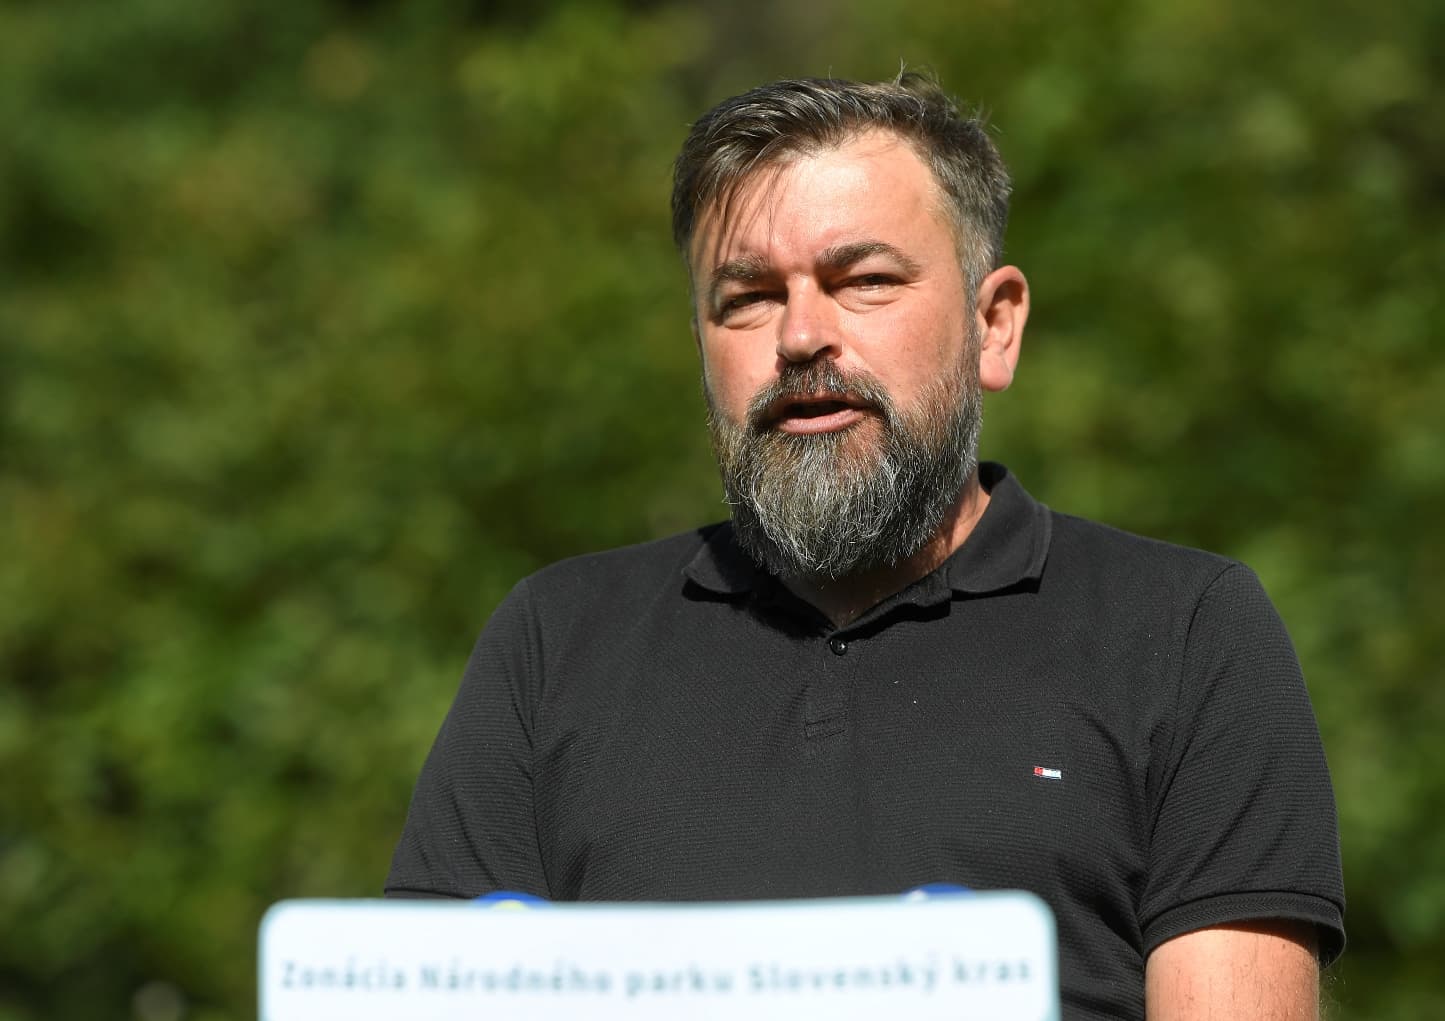 Szembement a minisztérium döntésével, nincs maradása a Szlovák Karszt Nemzeti Park igazgatójának